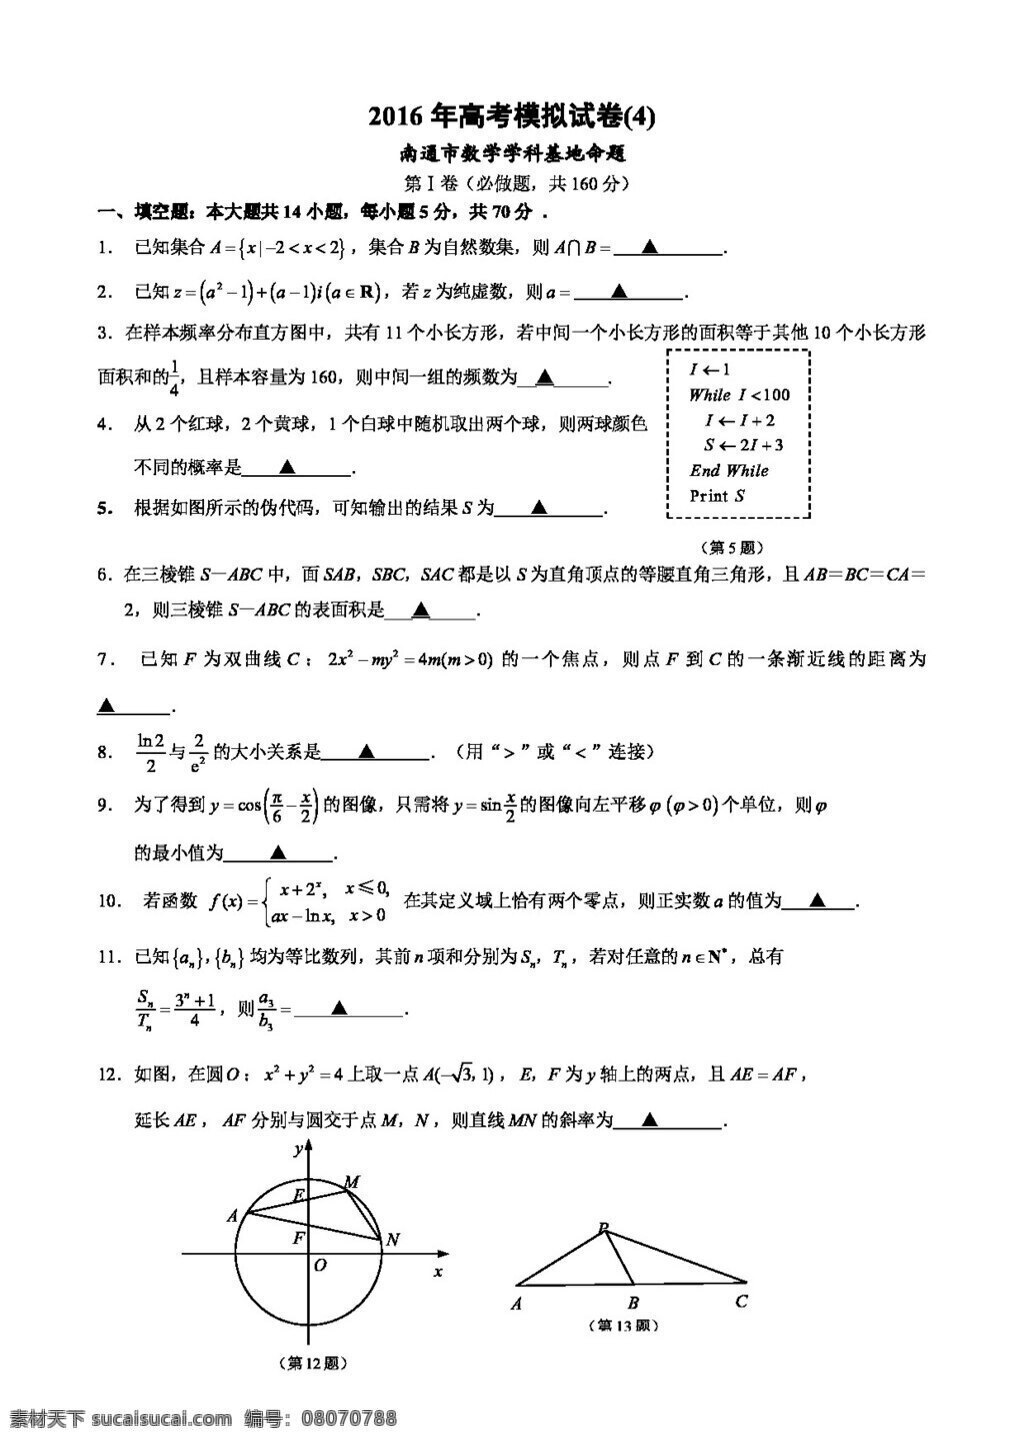 数学 苏 教 版 2016 年 江苏省 南通市 高考 模拟试卷 含 答案 高考专区 试卷 苏教版